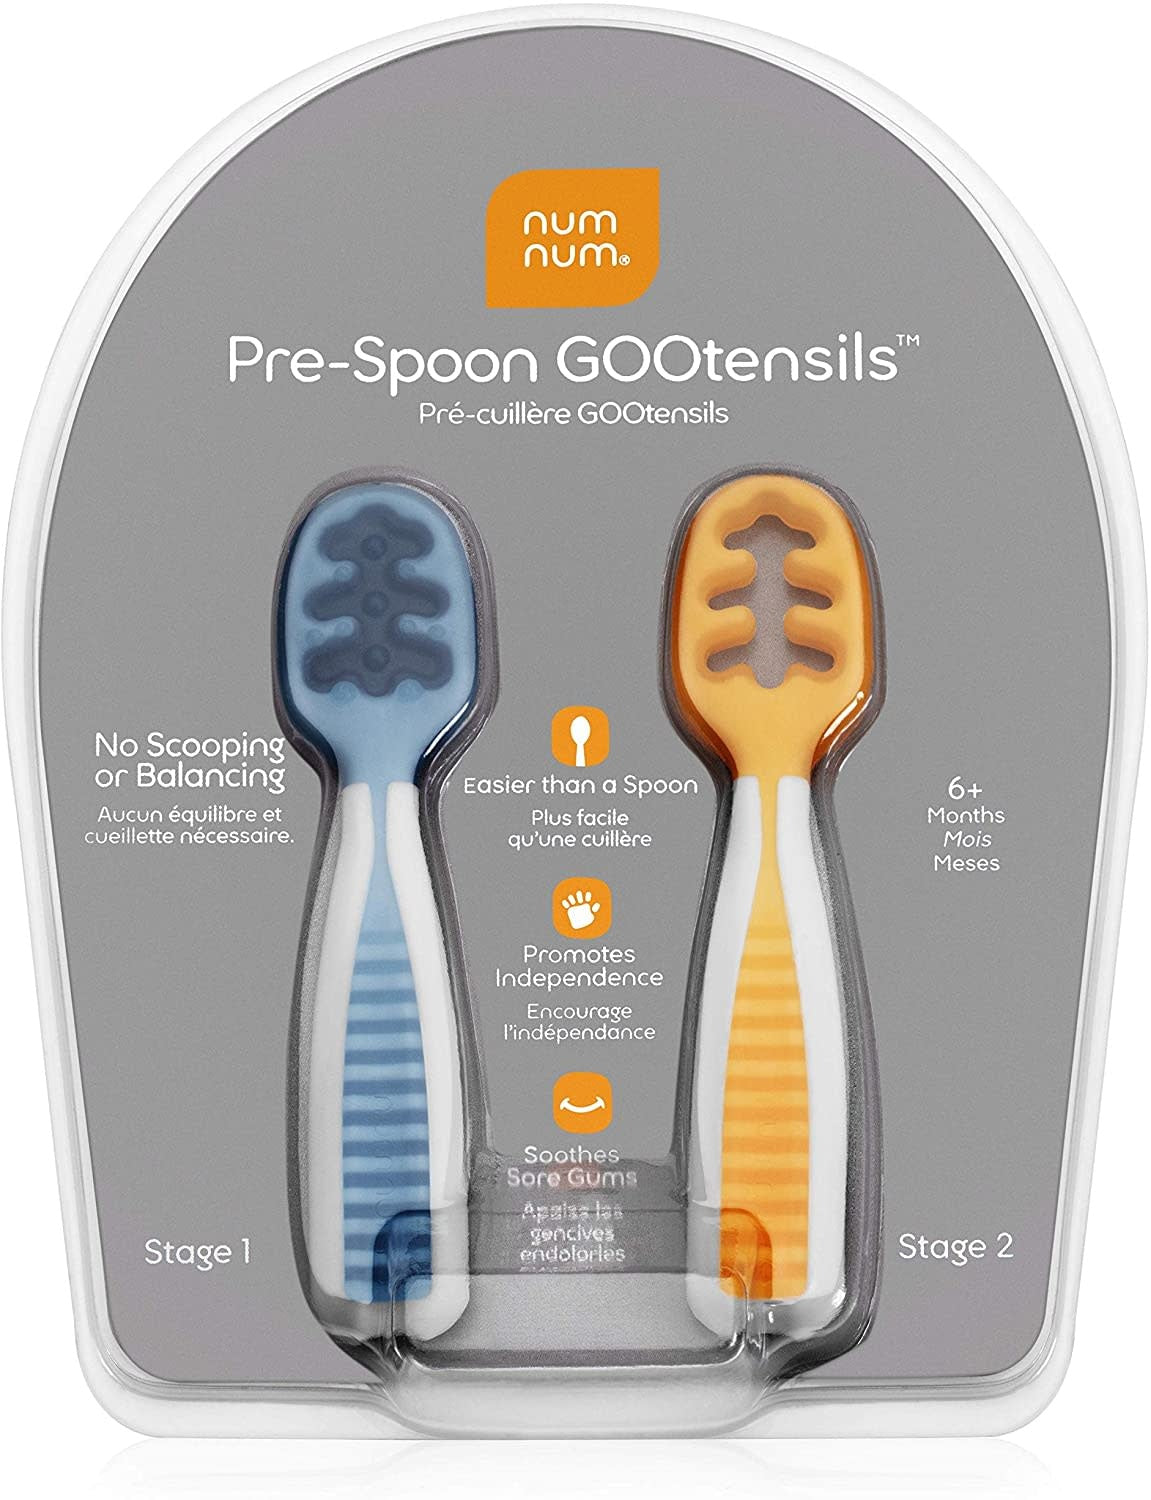 Pre-spoon